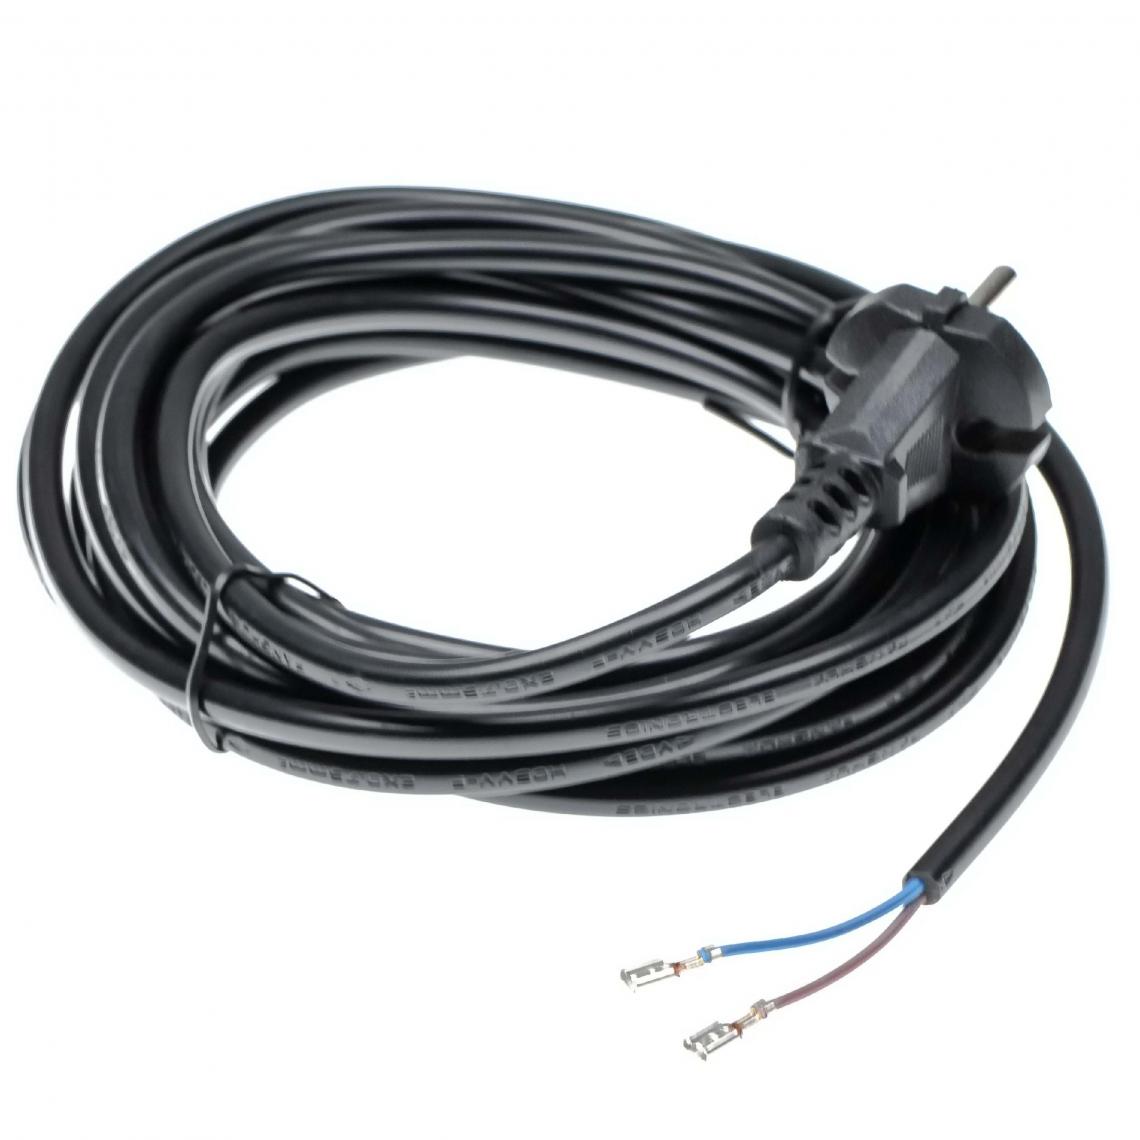 Vhbw - vhbw Câble électrique compatible avec Kärcher SE 4001, T12/1, WD3 200 aspirateurs - 6 m, 4000 W - Accessoire entretien des sols